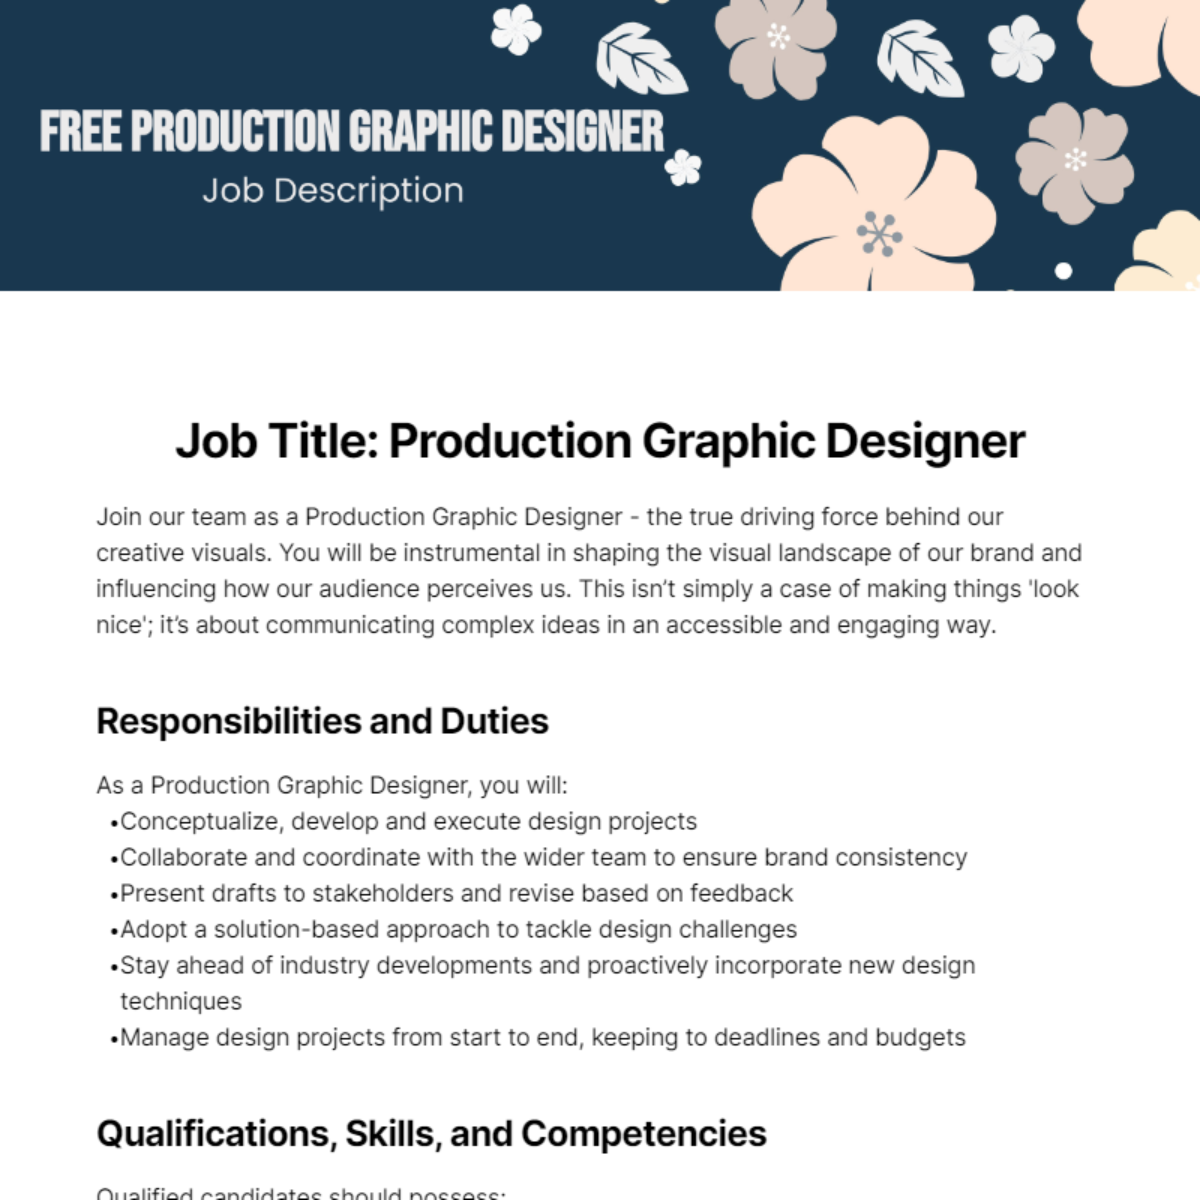 Free Production Graphic Designer Job Description Template